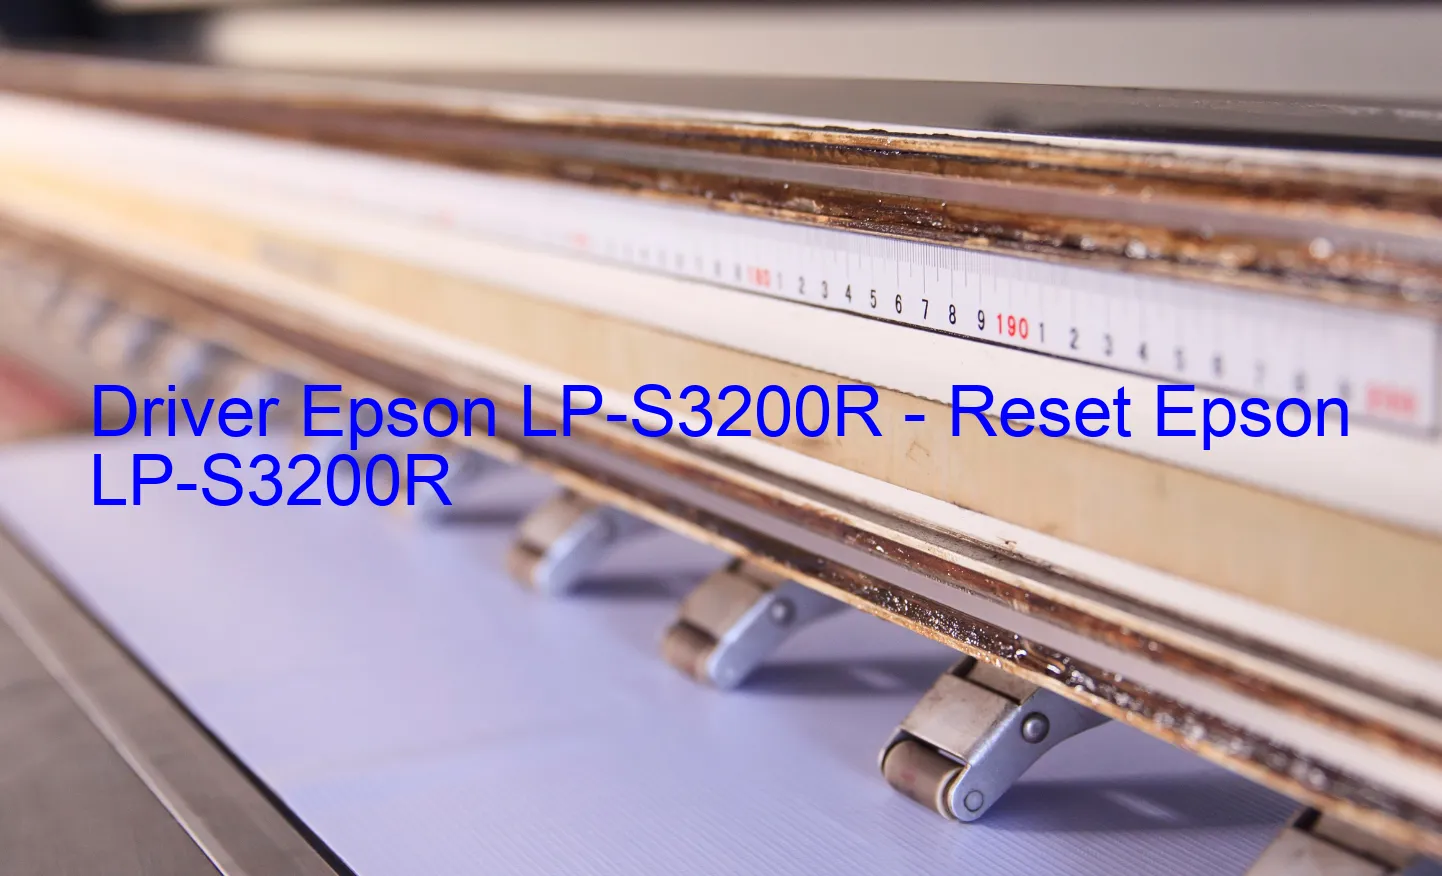 Epson LP-S3200Rのドライバー、Epson LP-S3200Rのリセットソフトウェア